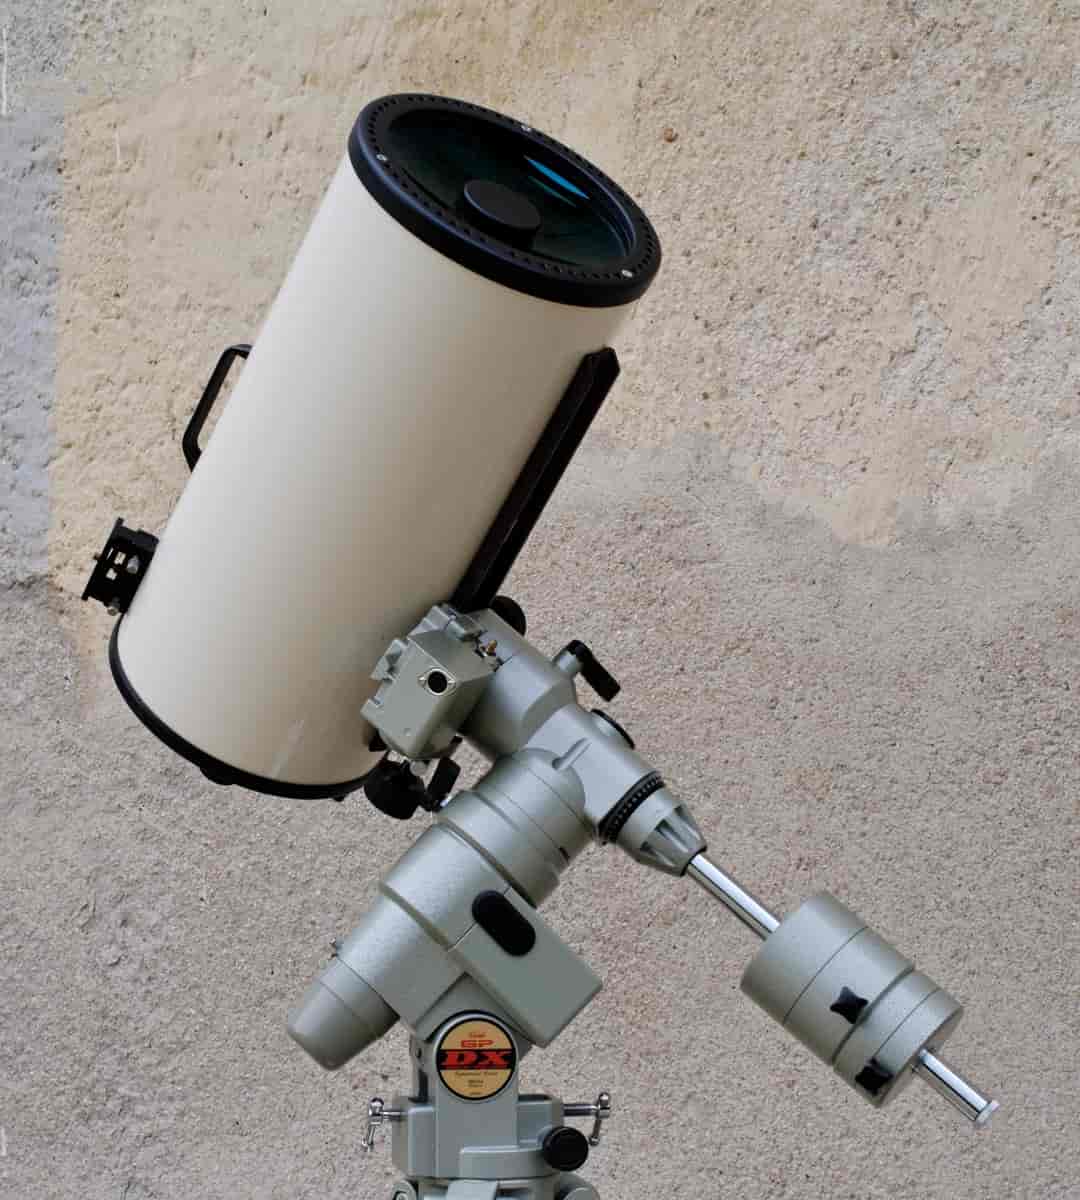 Ekvatorialmontering på et amatørteleskop